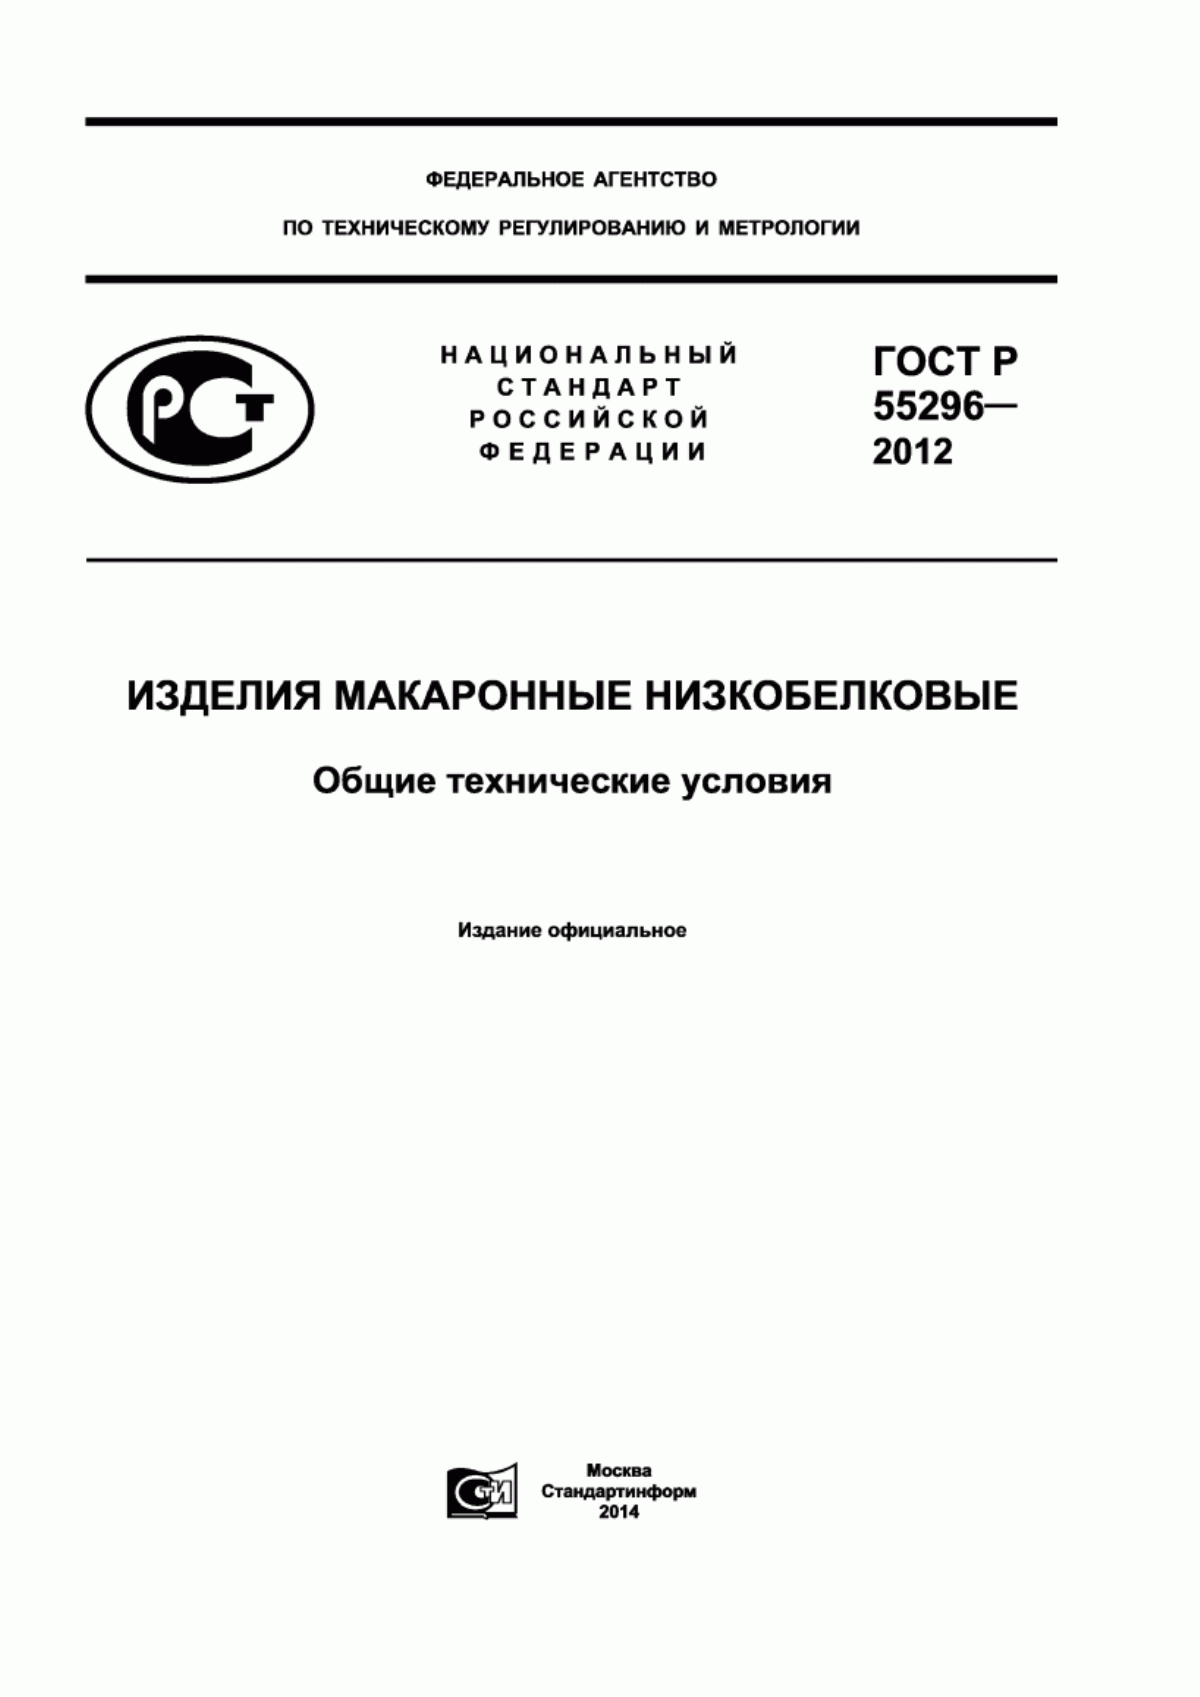 ГОСТ Р 55296-2012 Изделия макаронные низкобелковые. Общие технические условия